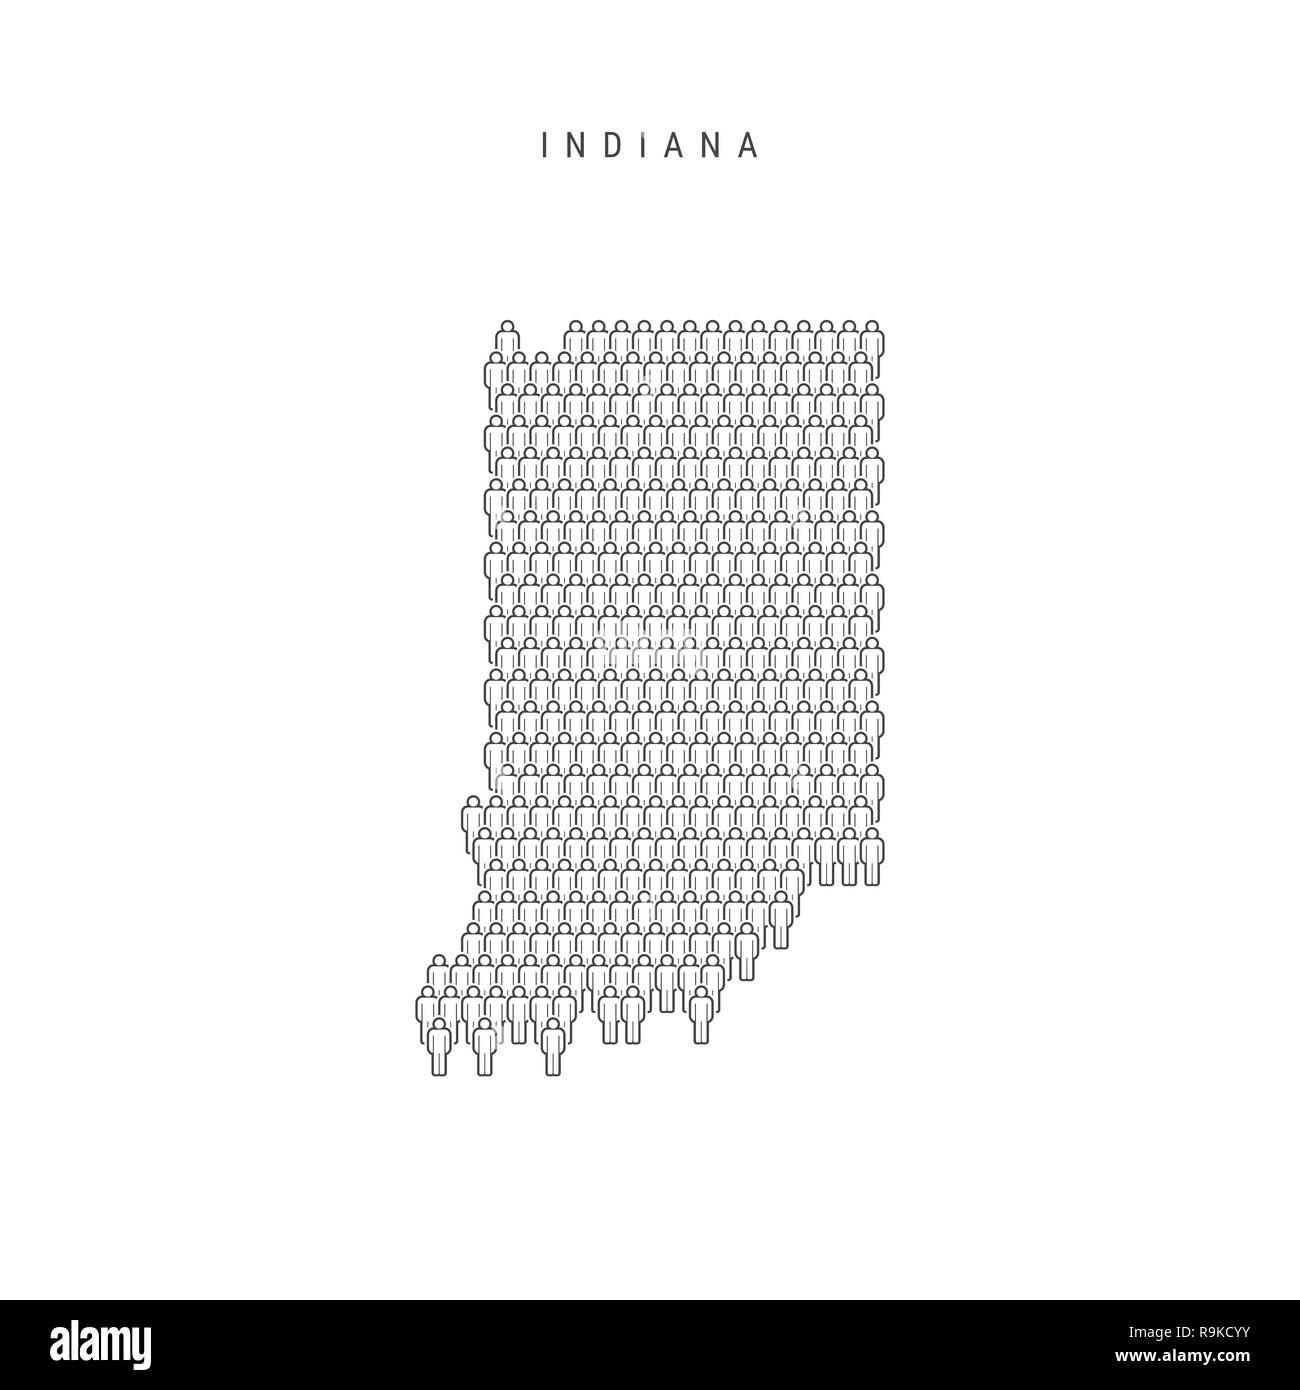 Leute Karte von Indiana, US-Staat. Stilisierte Silhouette, Leute in der Form einer Karte von Indiana. Indiana Bevölkerung. Abbildung isoliert auf Whit Stockfoto